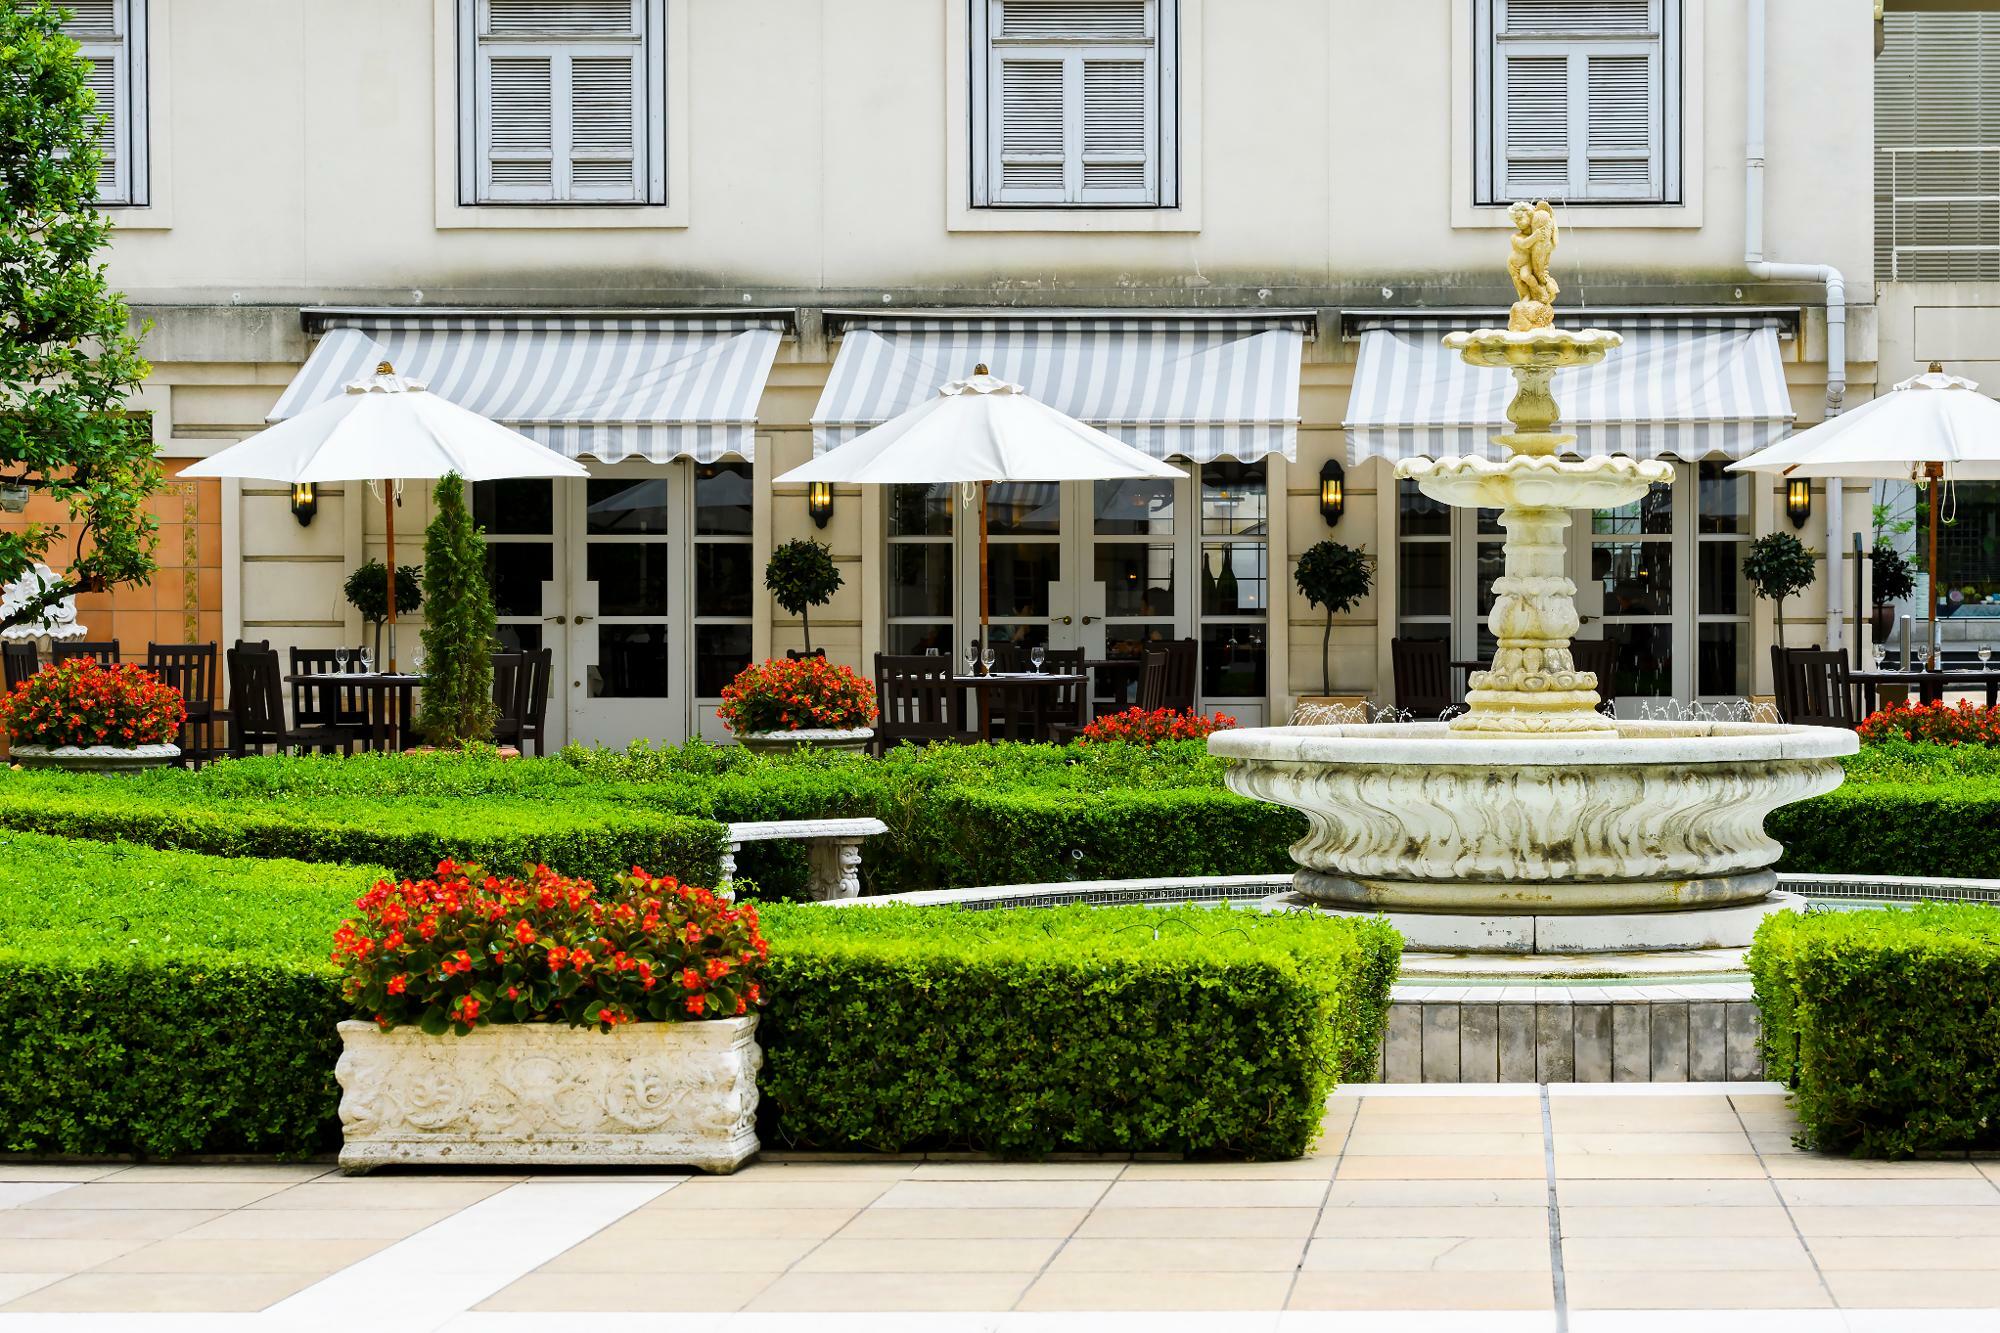 イタリアから直輸入された噴水が印象的な中庭はホテルを利用しなくても立ち寄れる。